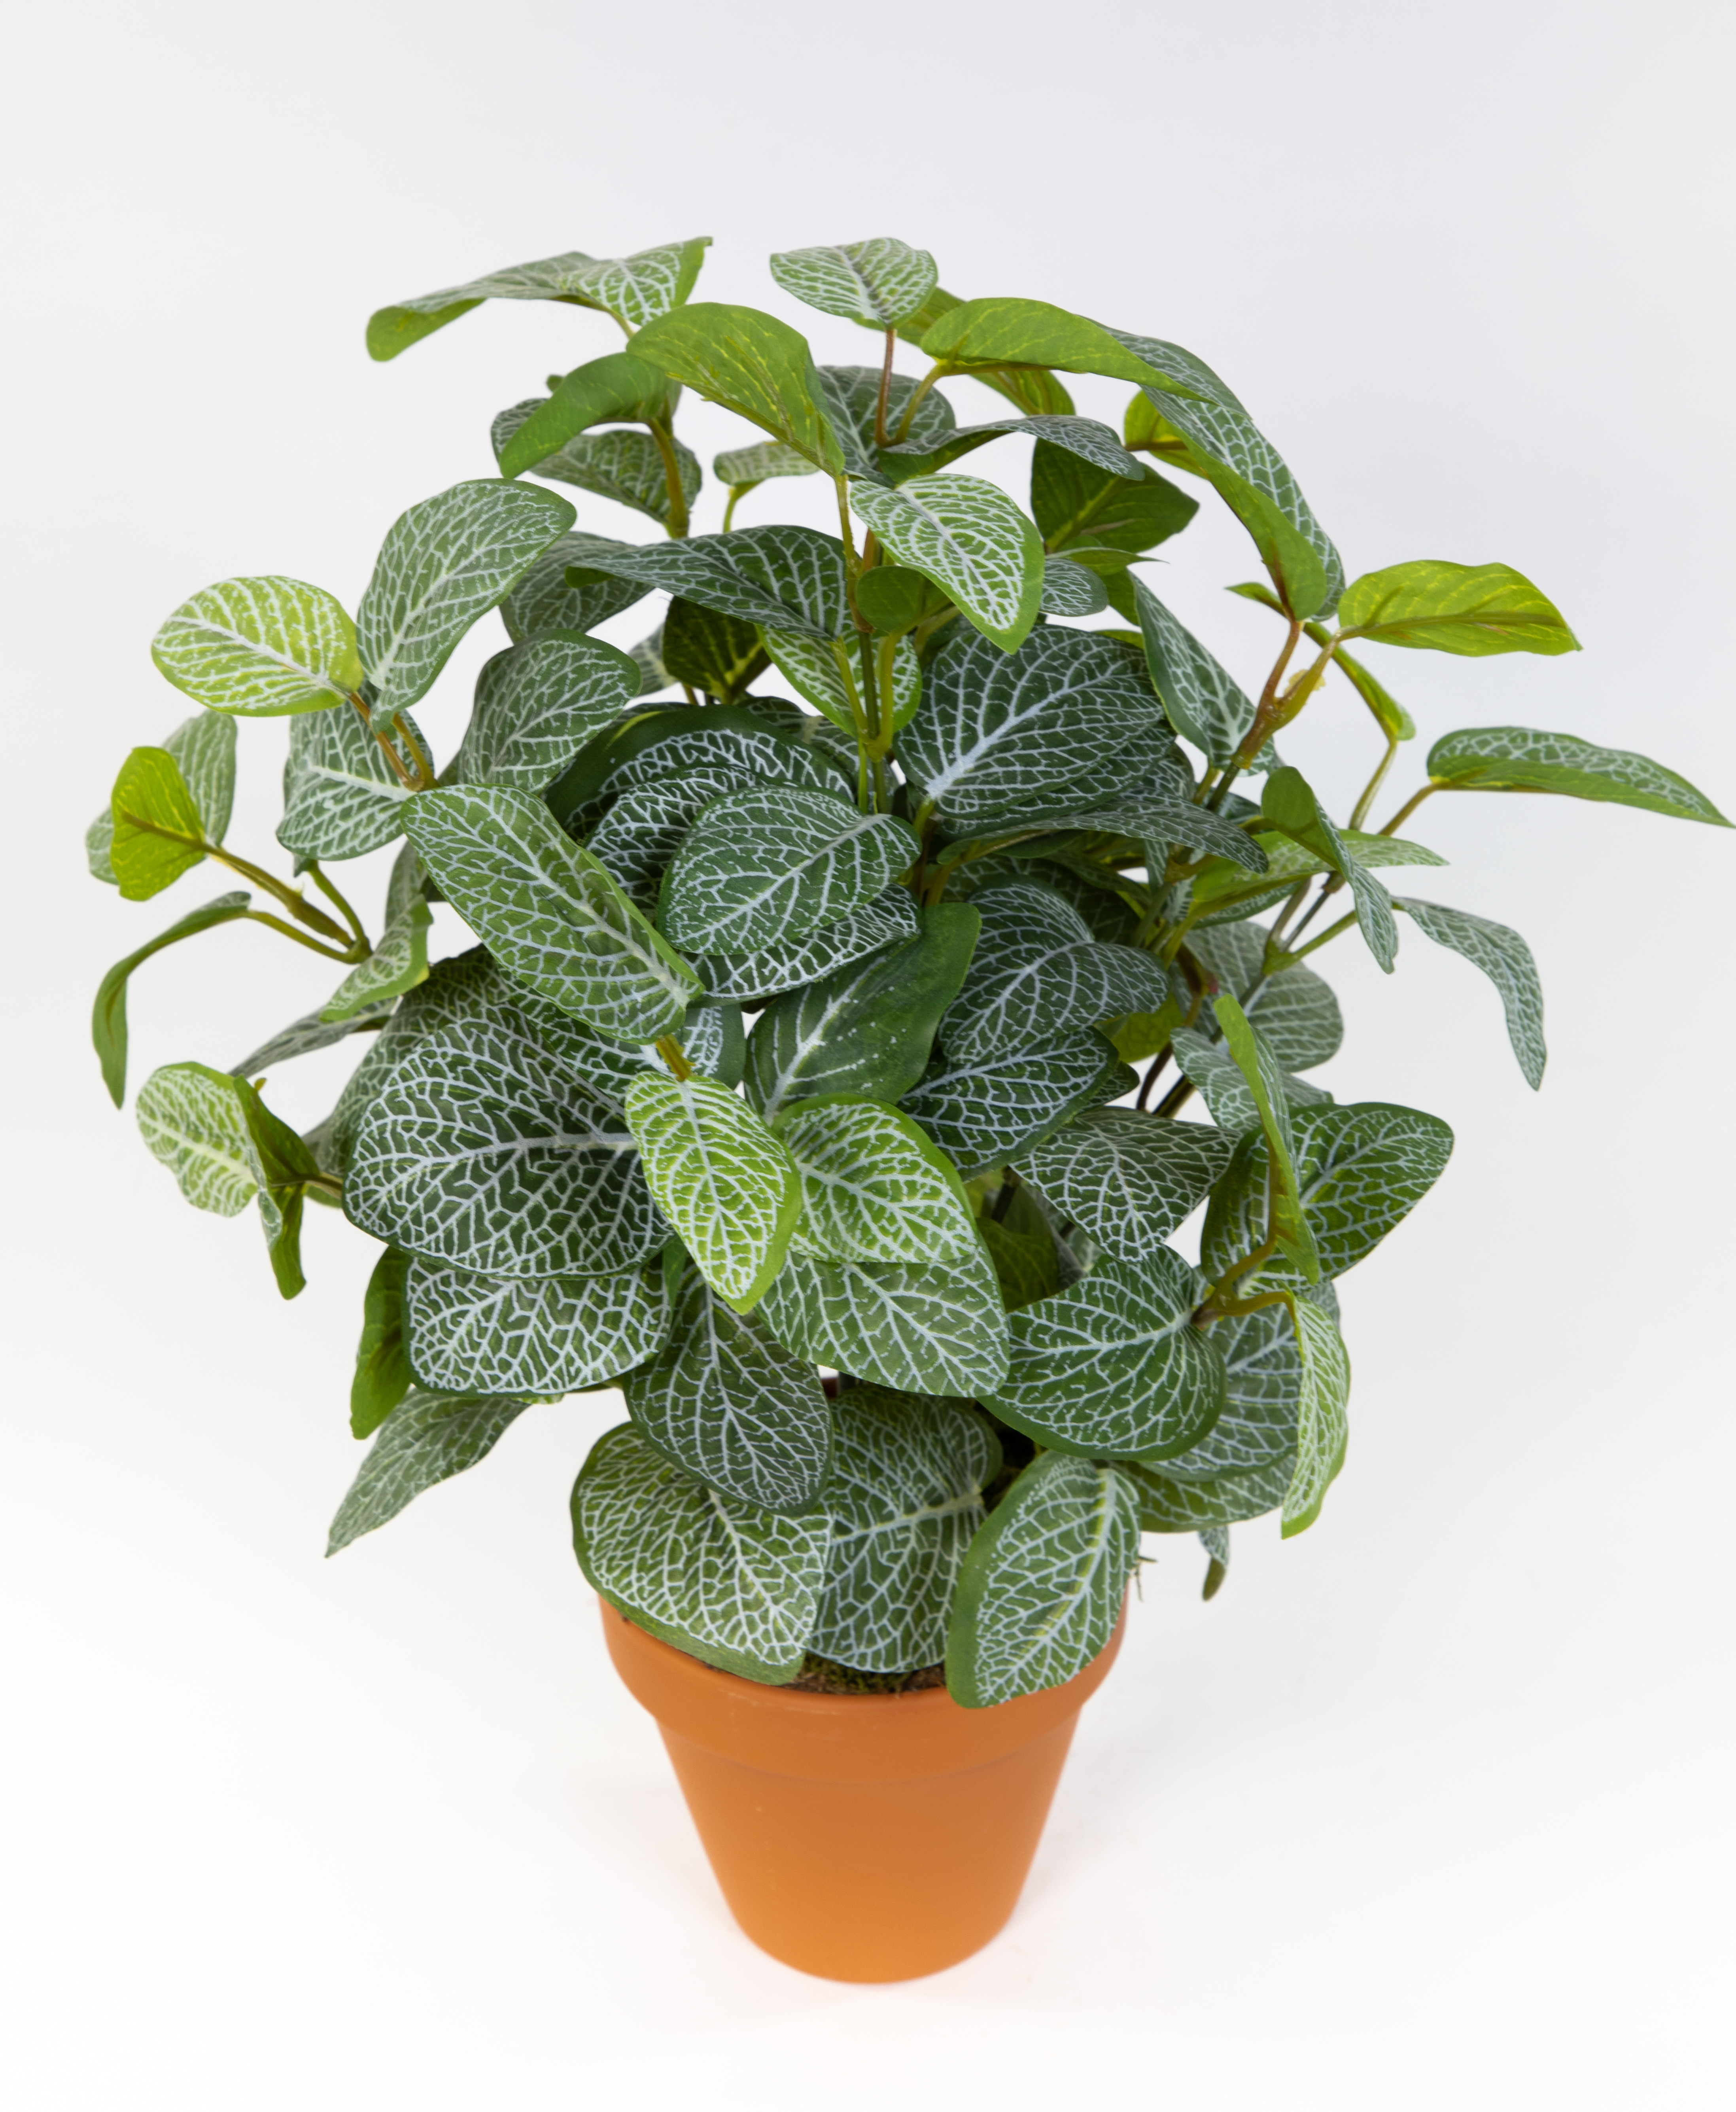 Fittonienpflanze 38cm grün-weiß imt Topf JA Kunstpflanzen künstliche Fittonie Pflanzen Fittonia Mosa